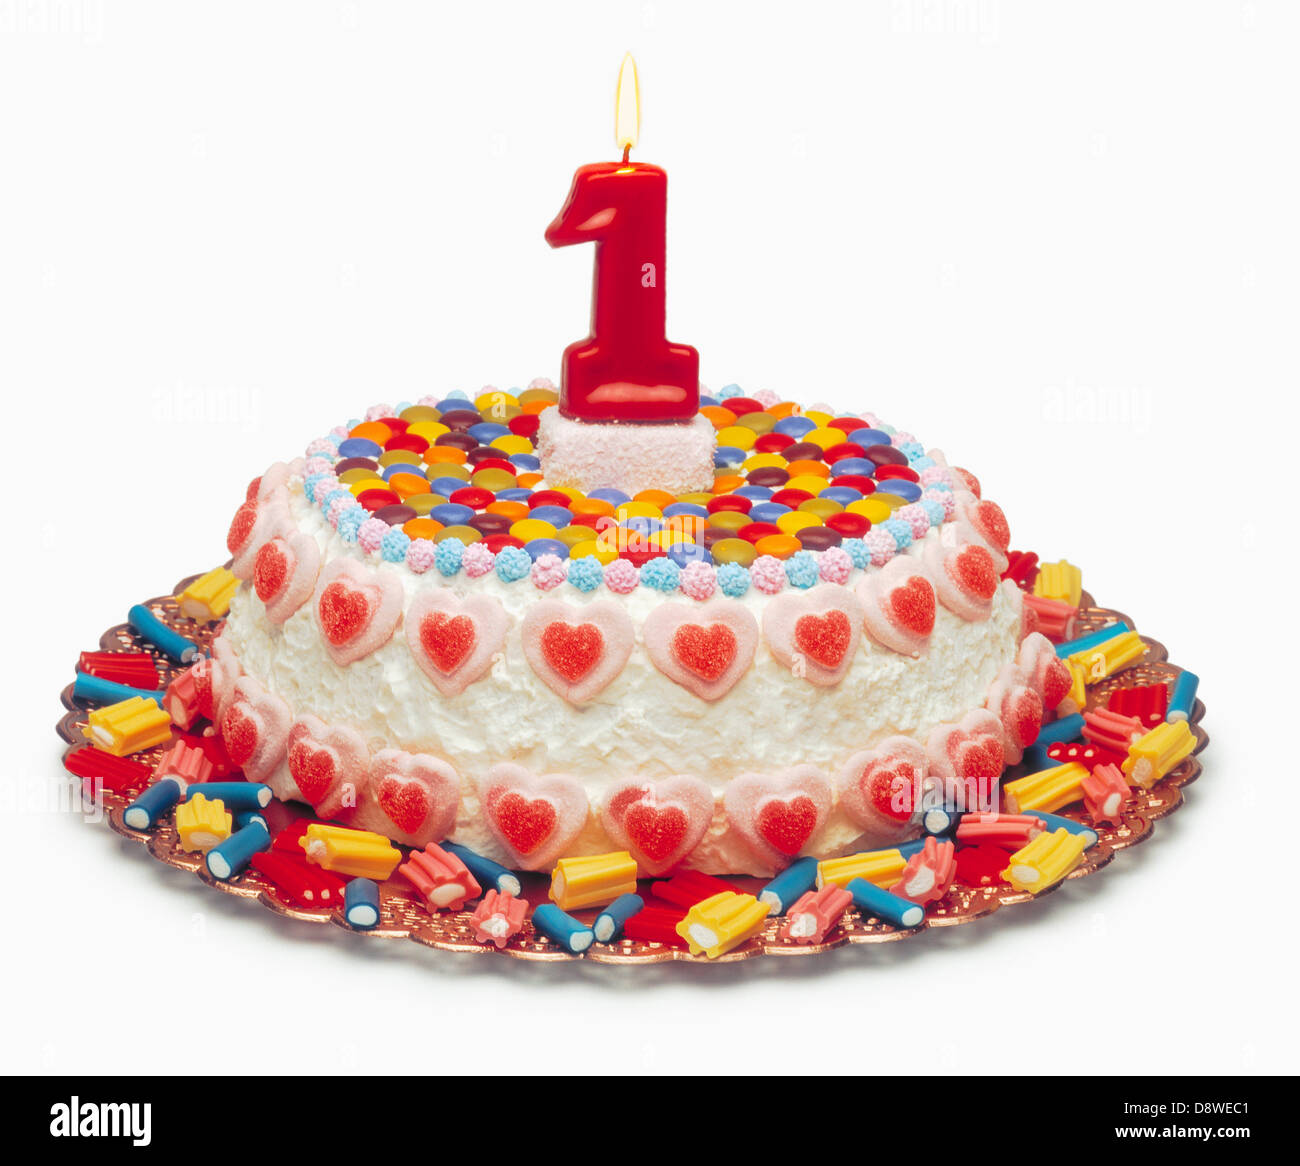 1 anno vecchia torta di compleanno Foto stock - Alamy